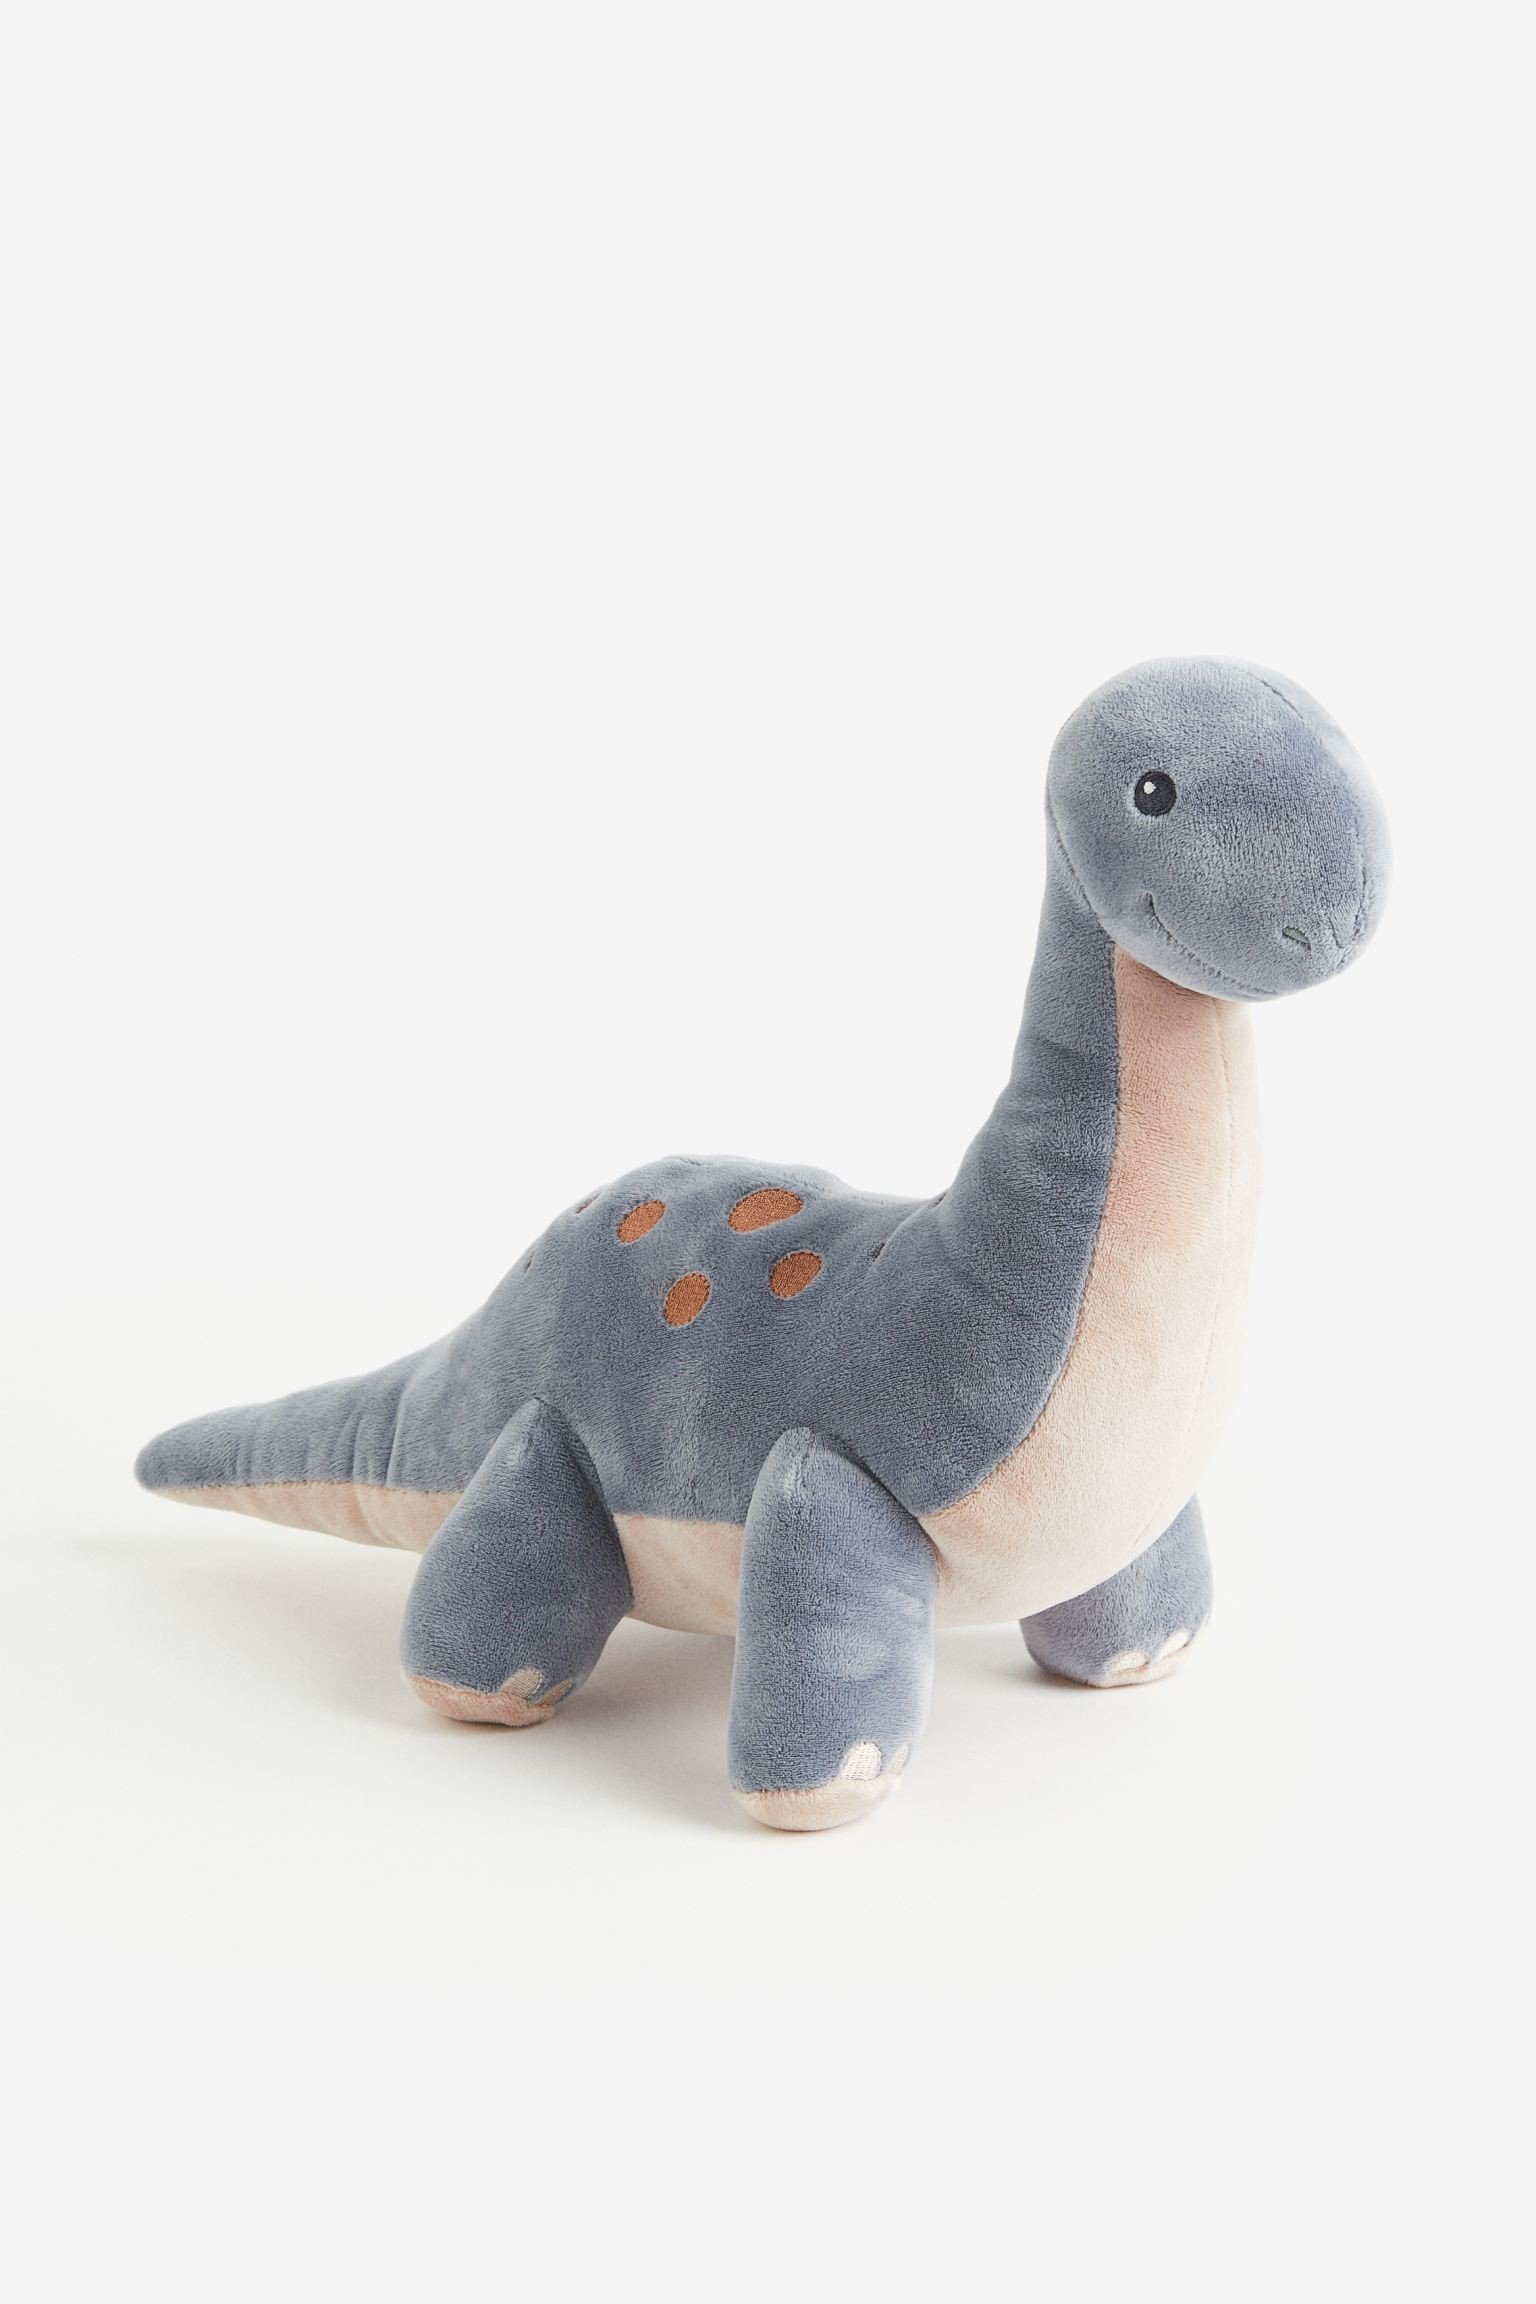 H&M Home М'яка іграшка динозавр, Синій/Бронтозавр 1162675001 1162675001